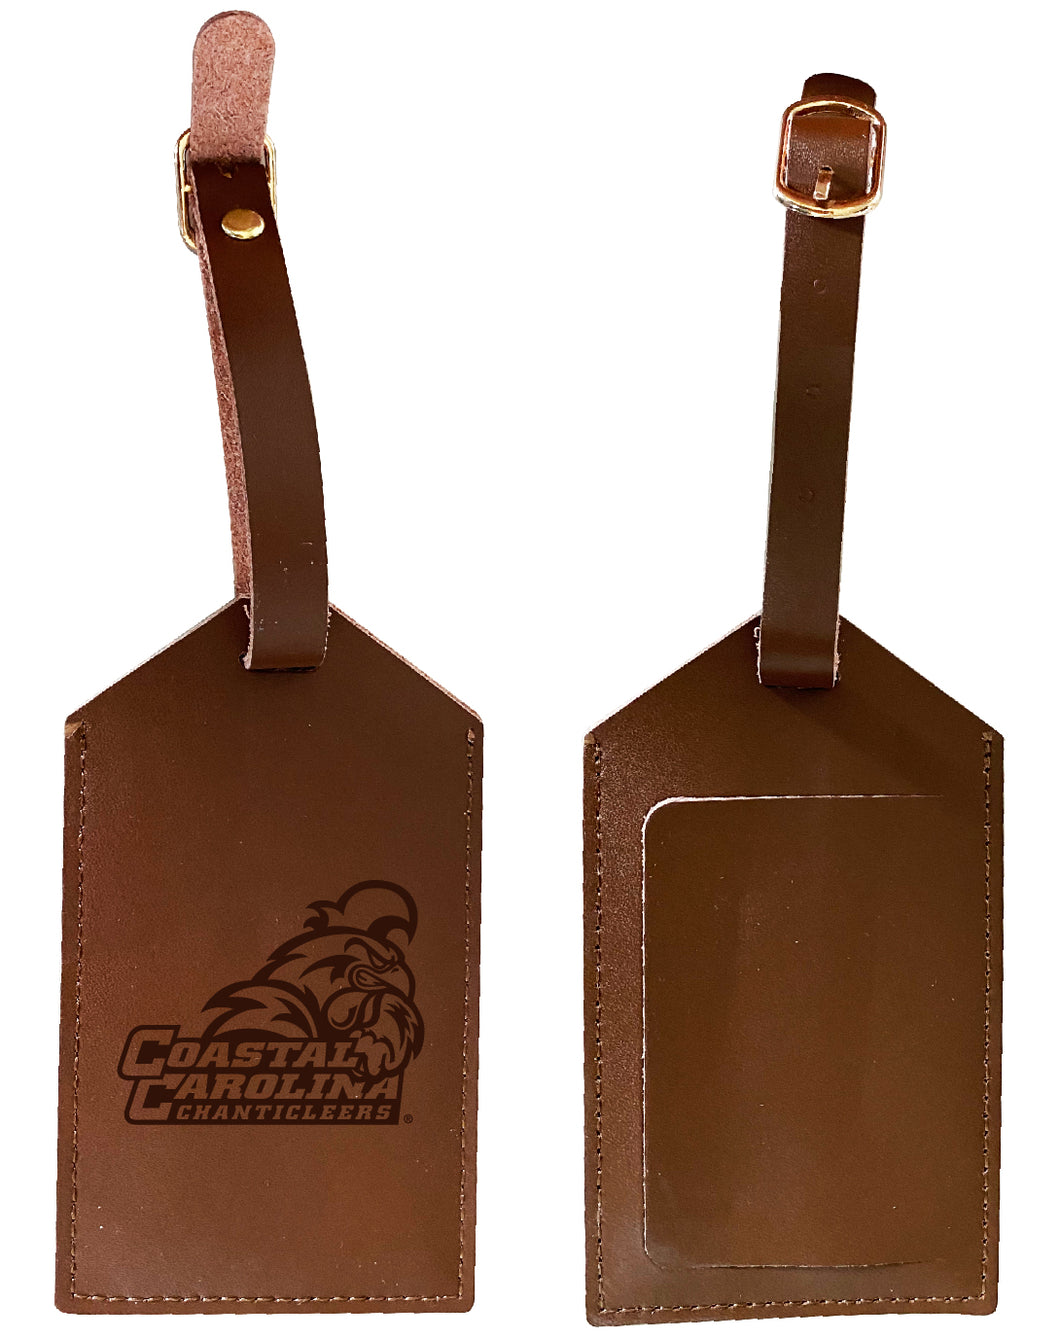 Elegant Coastal Carolina University NCAA Leather Luggage Tag with Engraved Logo